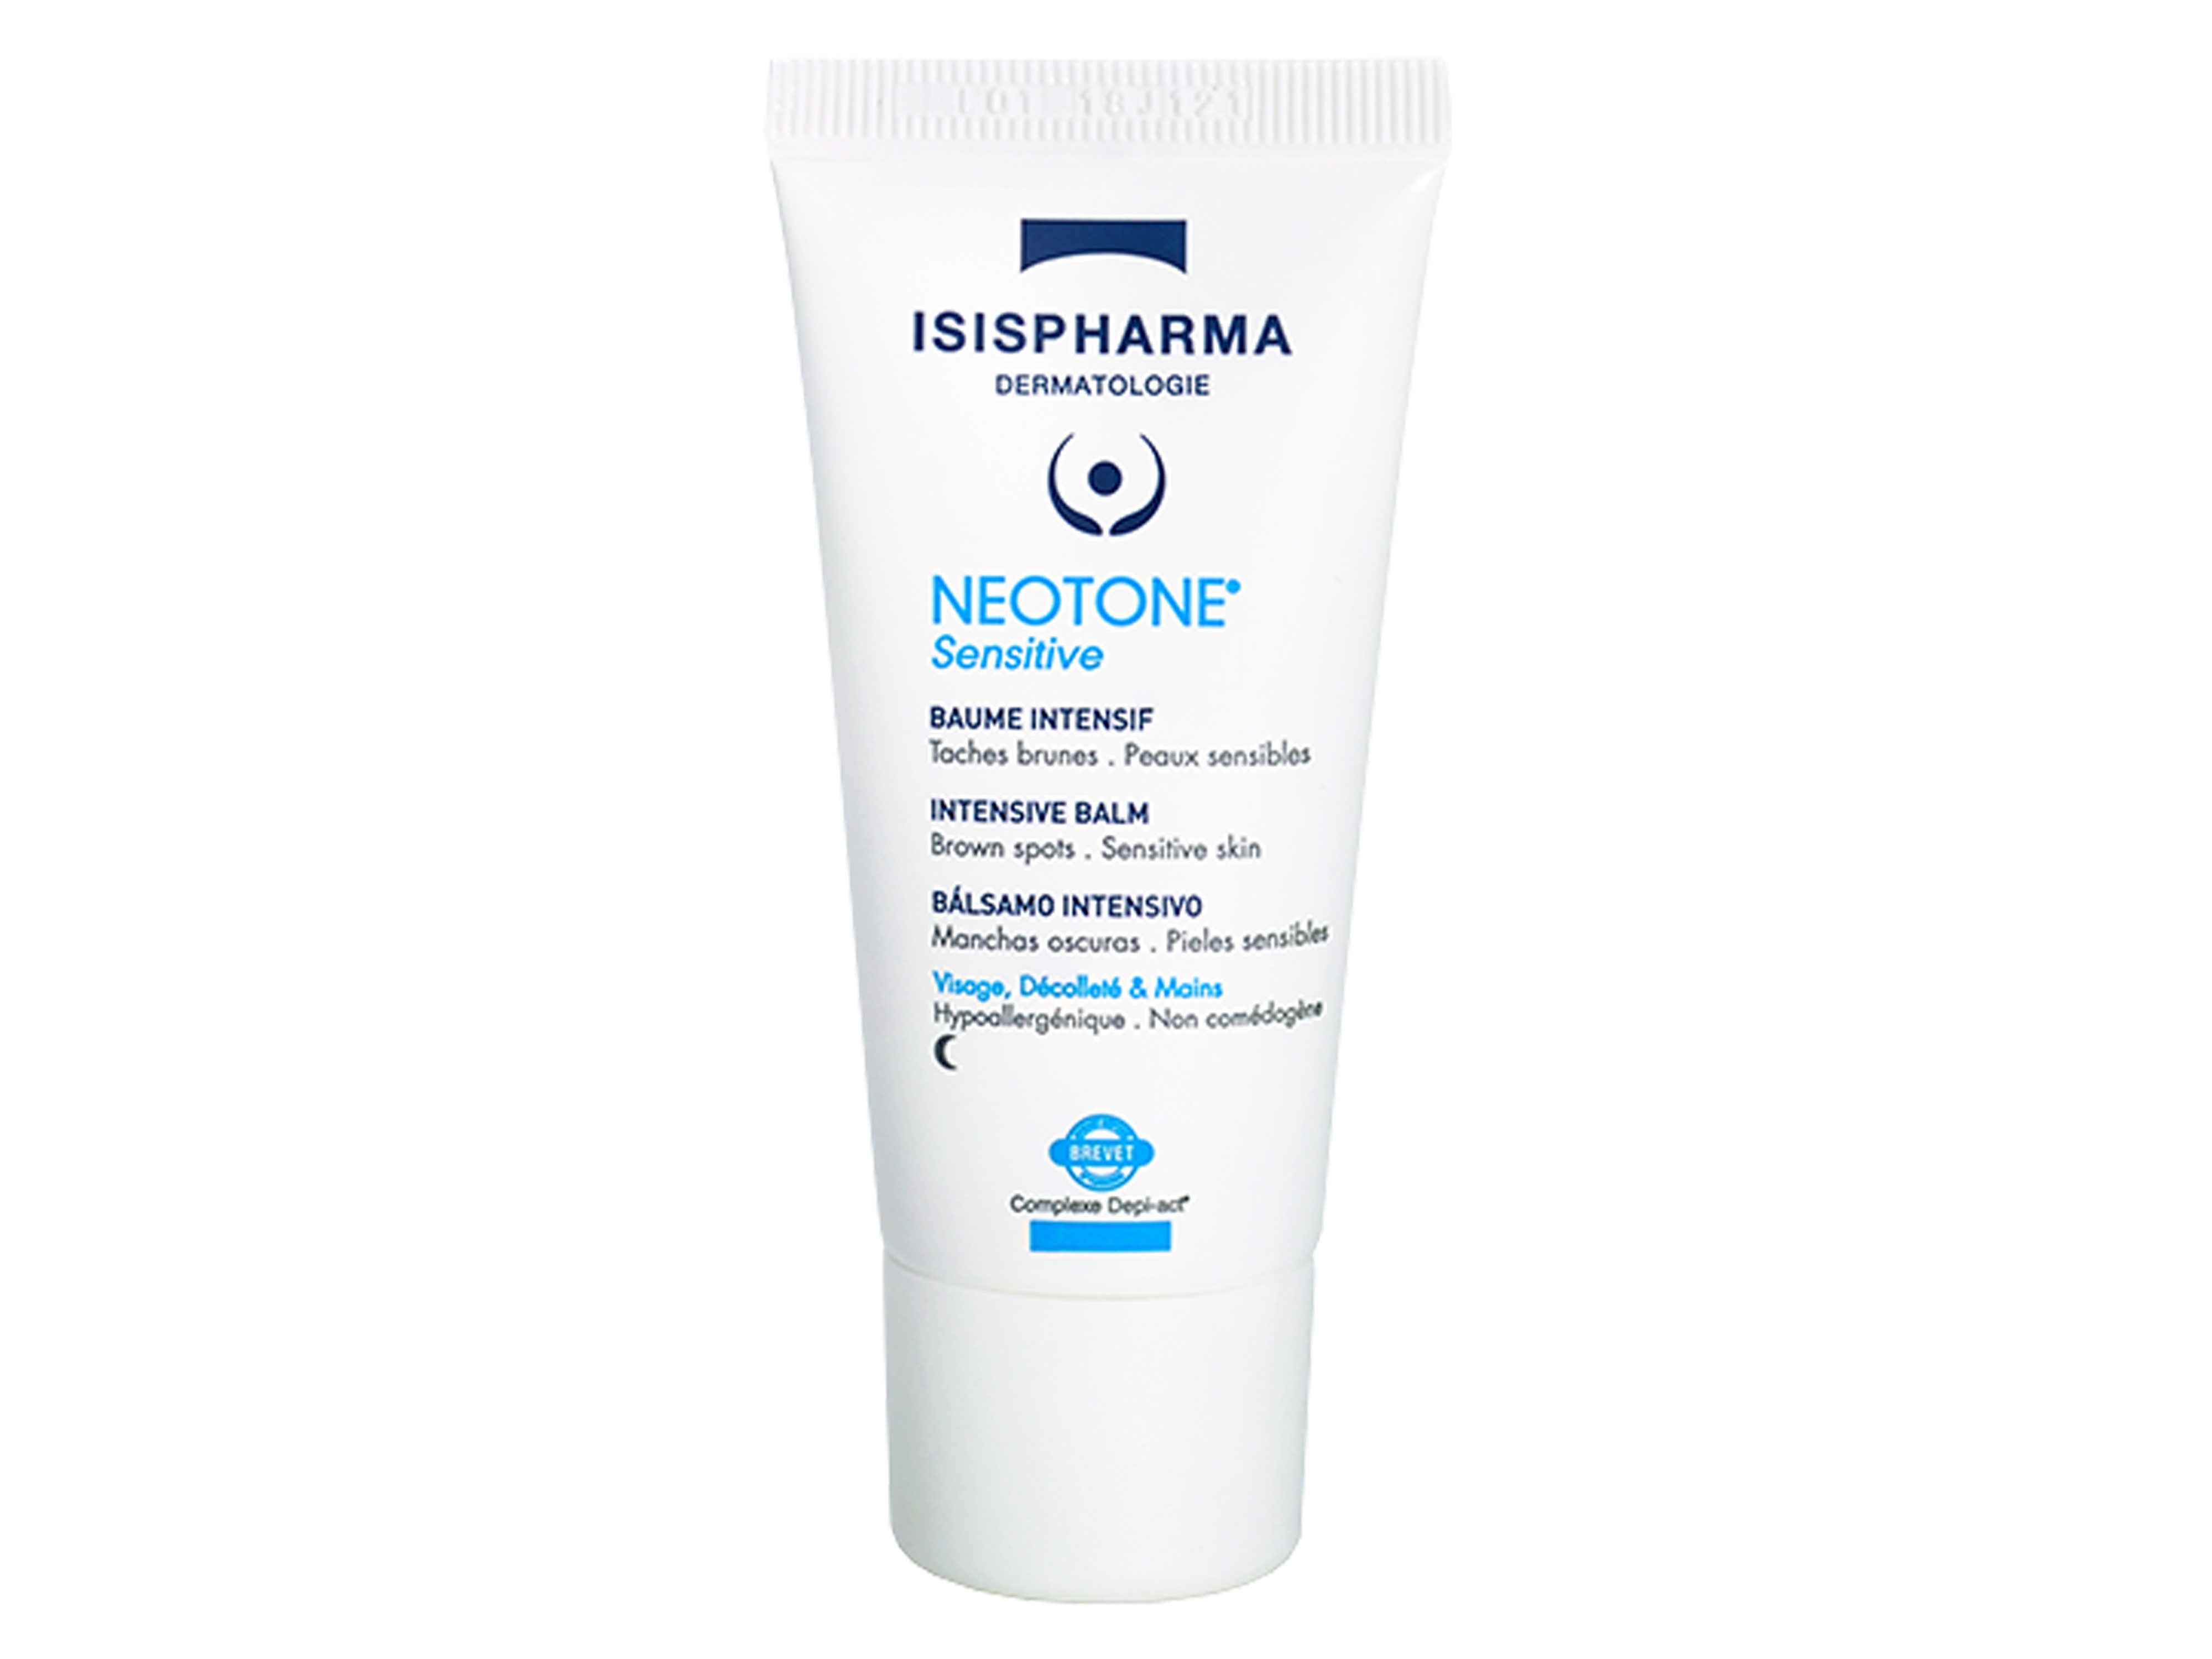 Isispharma Neotone Sensitive Balm, 30 ml